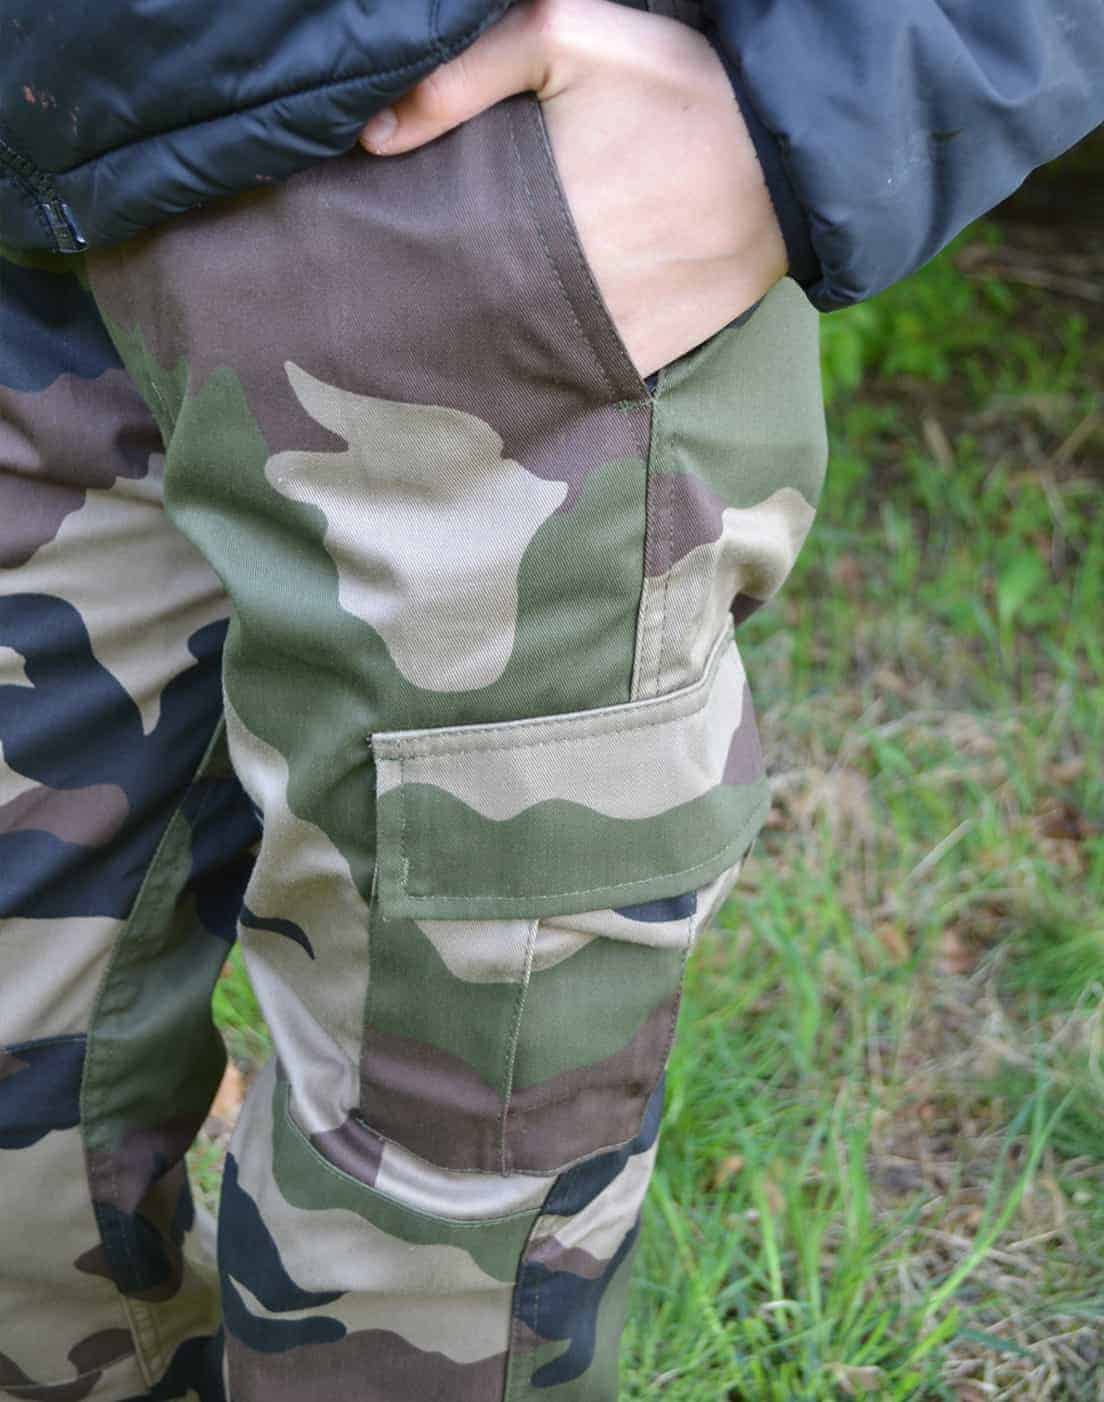 Rytmisk Som svar på biografi Camouflage bukser jungle - Junior Grej tøj til børn 4-14 år